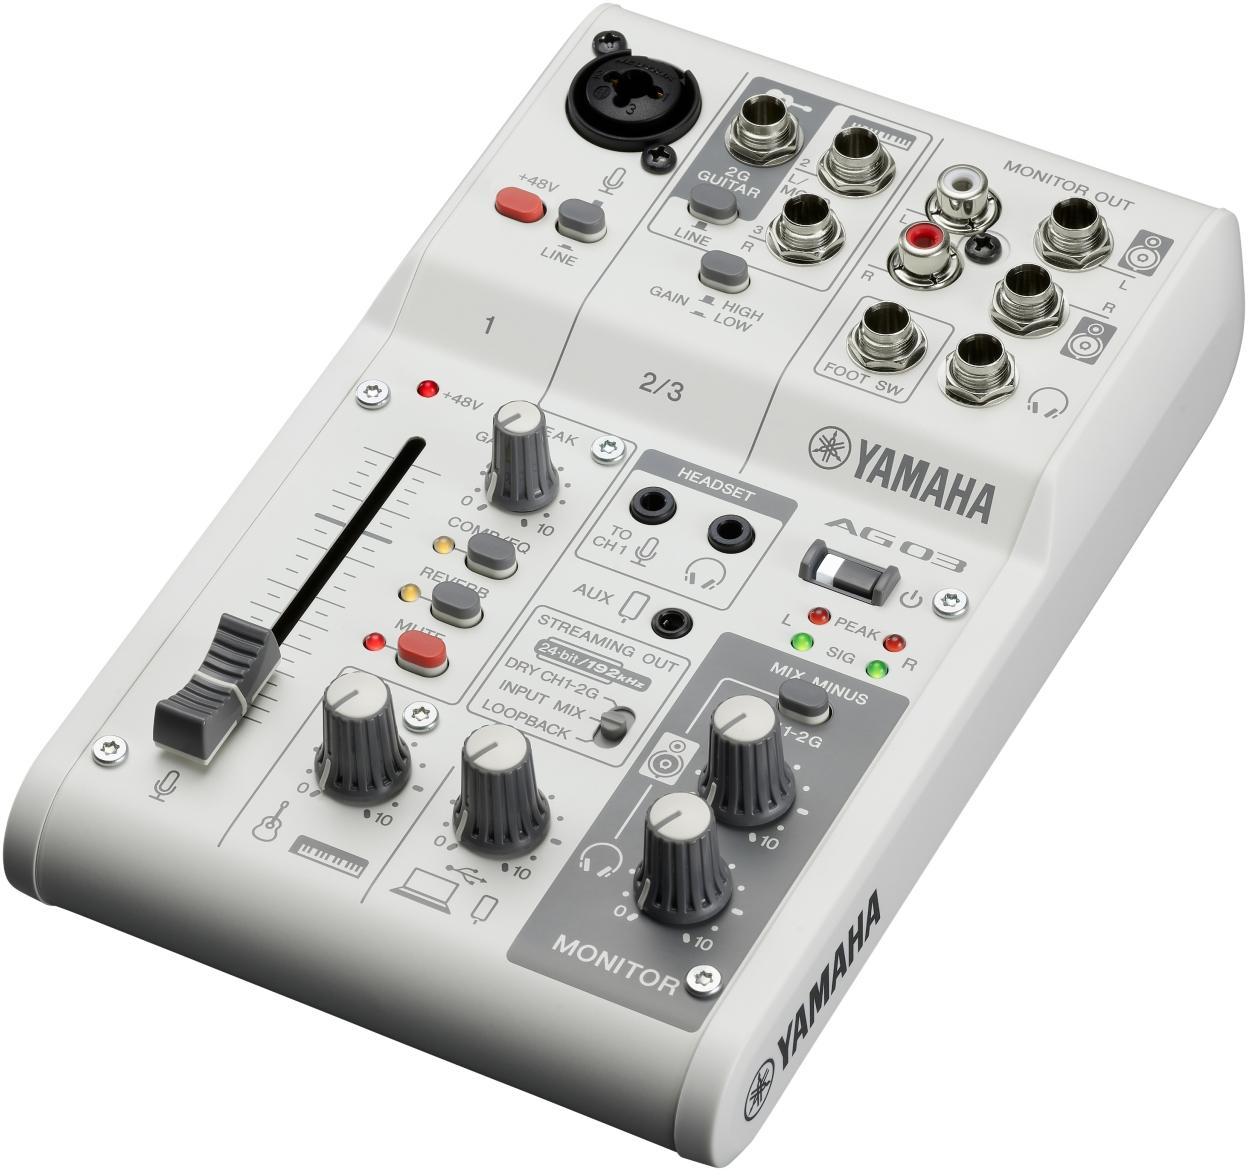 Analog mixing desk Yamaha AG03MK2 W